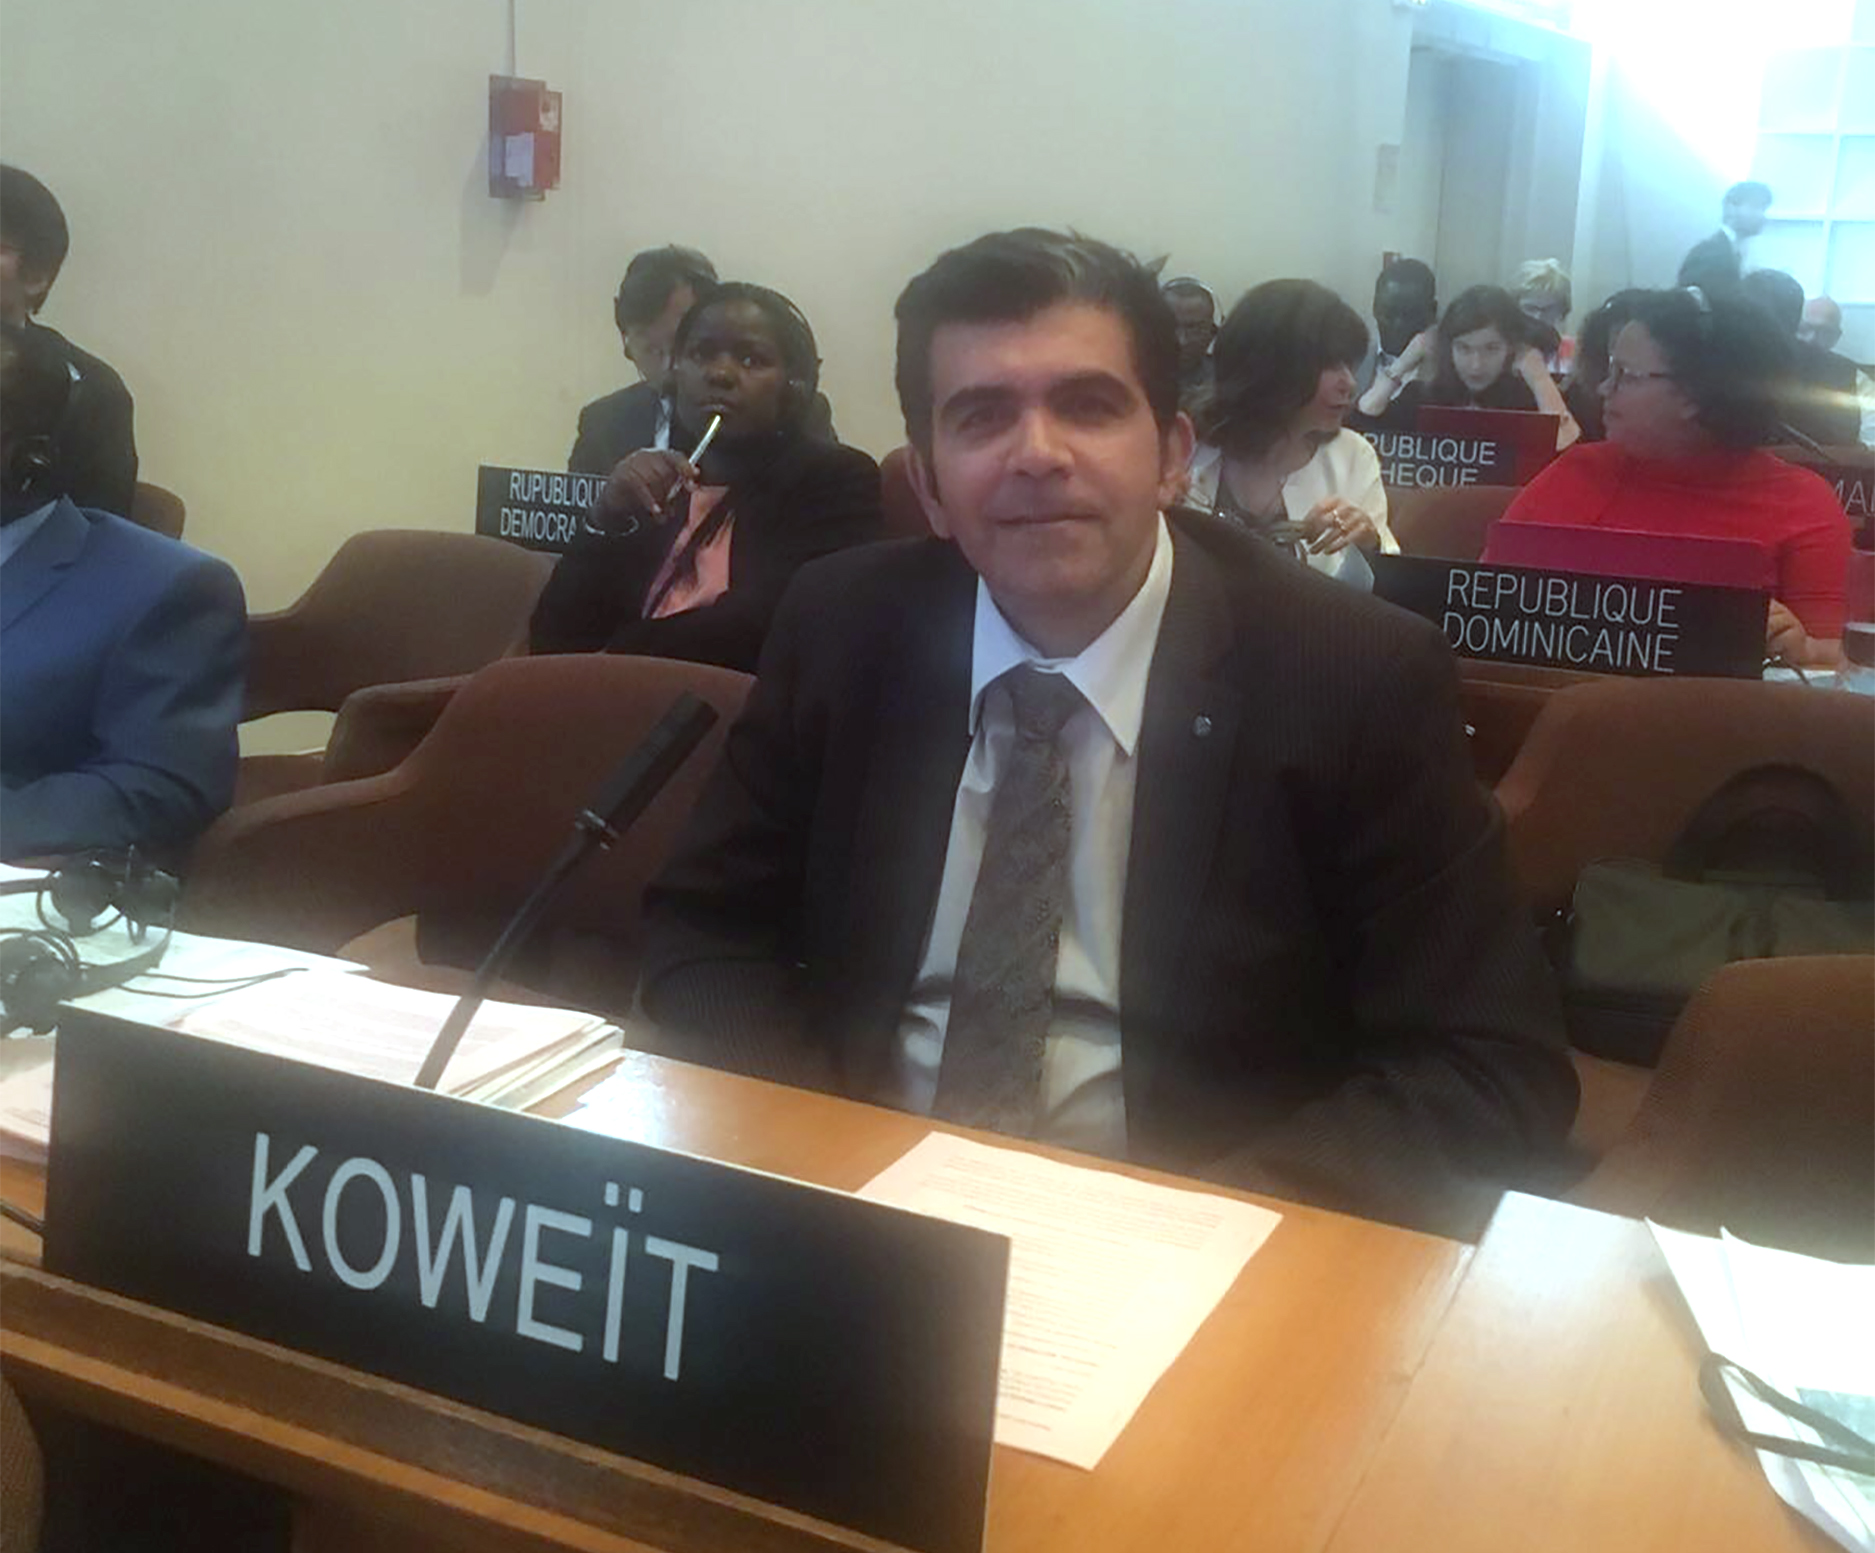 مندوب الكويت الدائم لدى منظمة الامم المتحدة للتربية والعلم والثقافة (يونسكو) الدكتور مشعل حيات